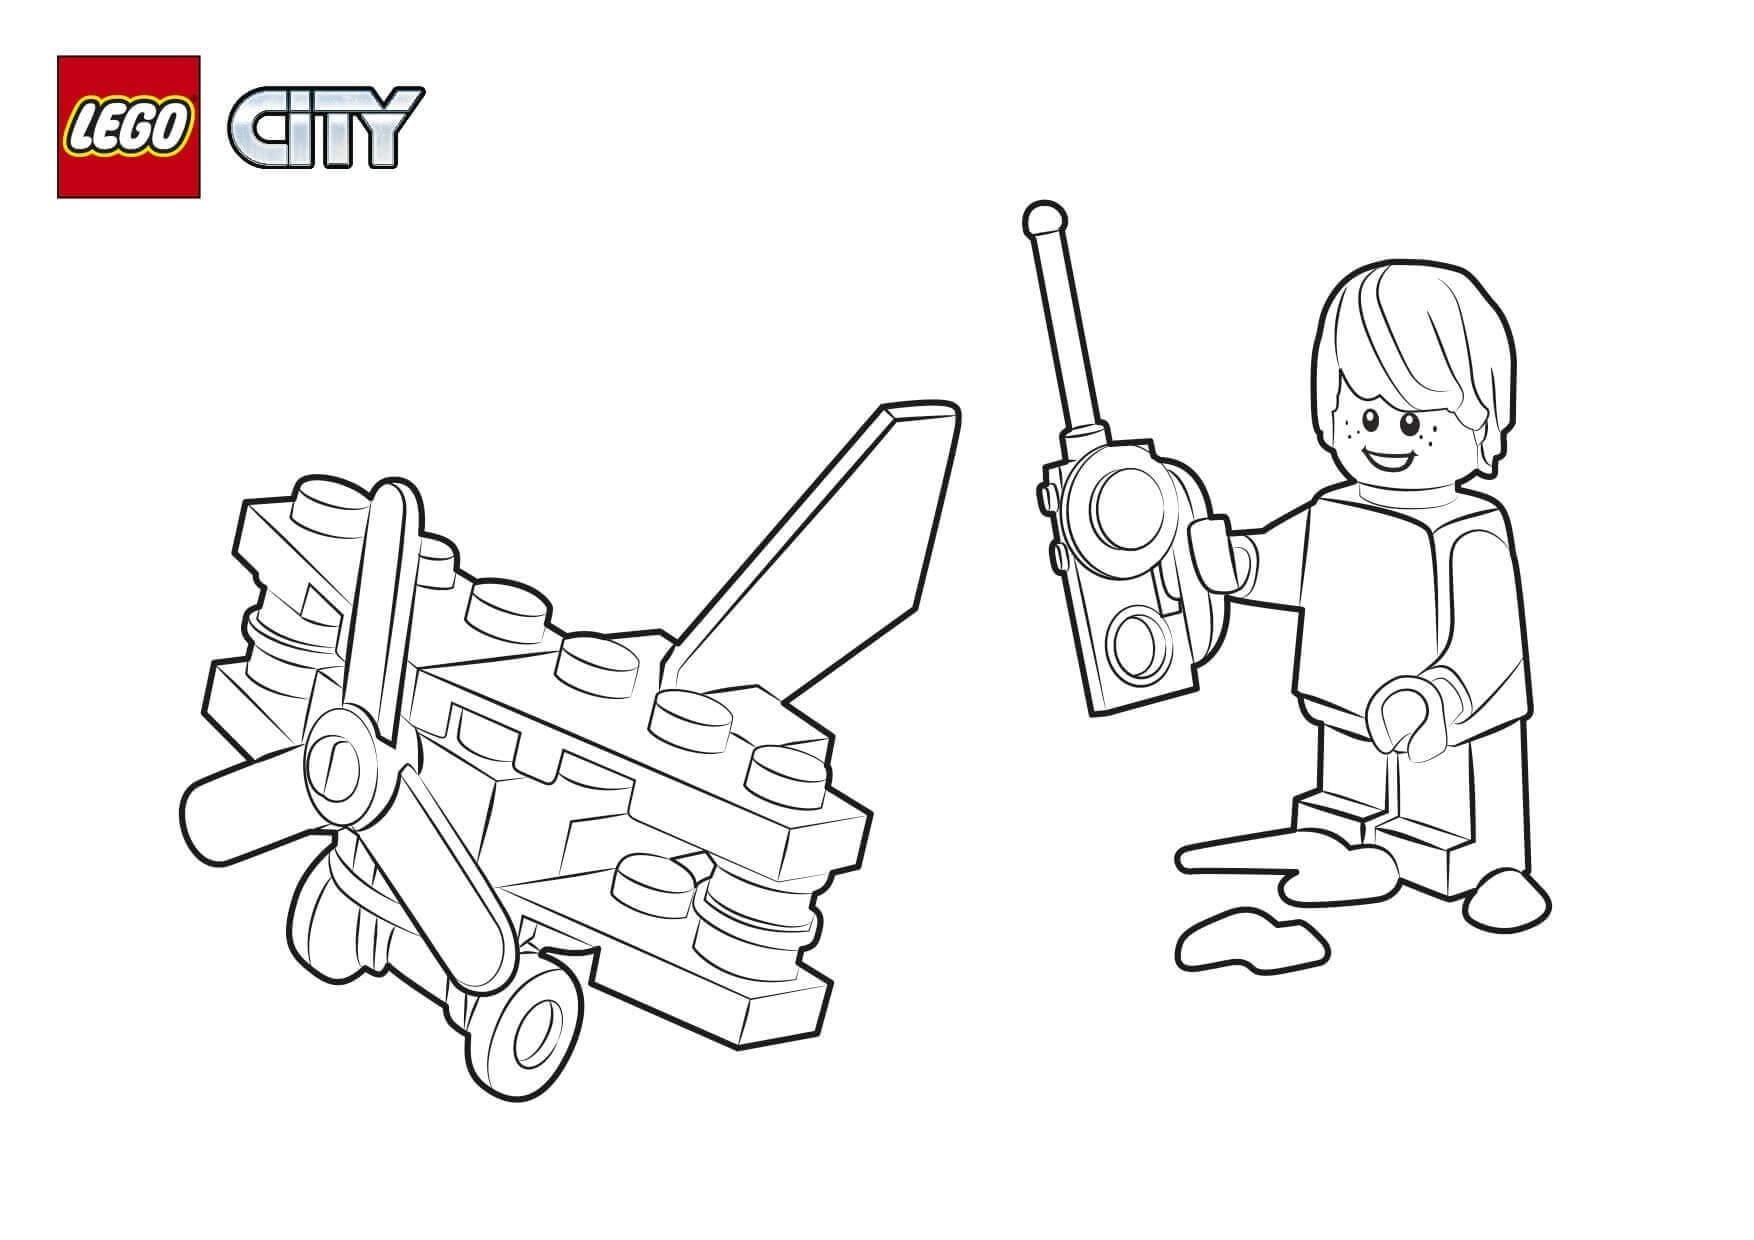 LEGO City 05